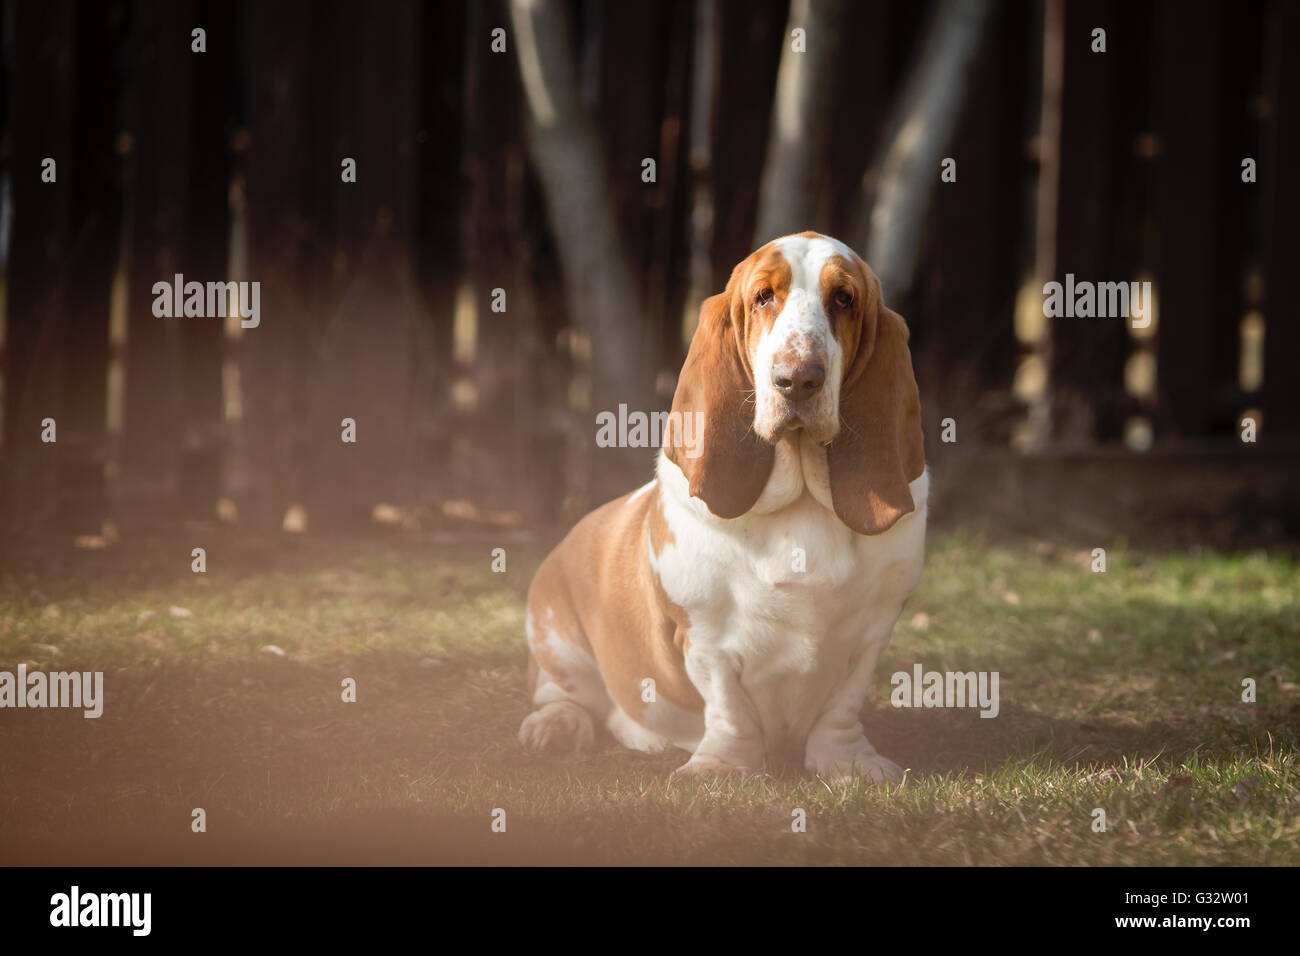 Portrait d'un basset hound dog in garden Banque D'Images